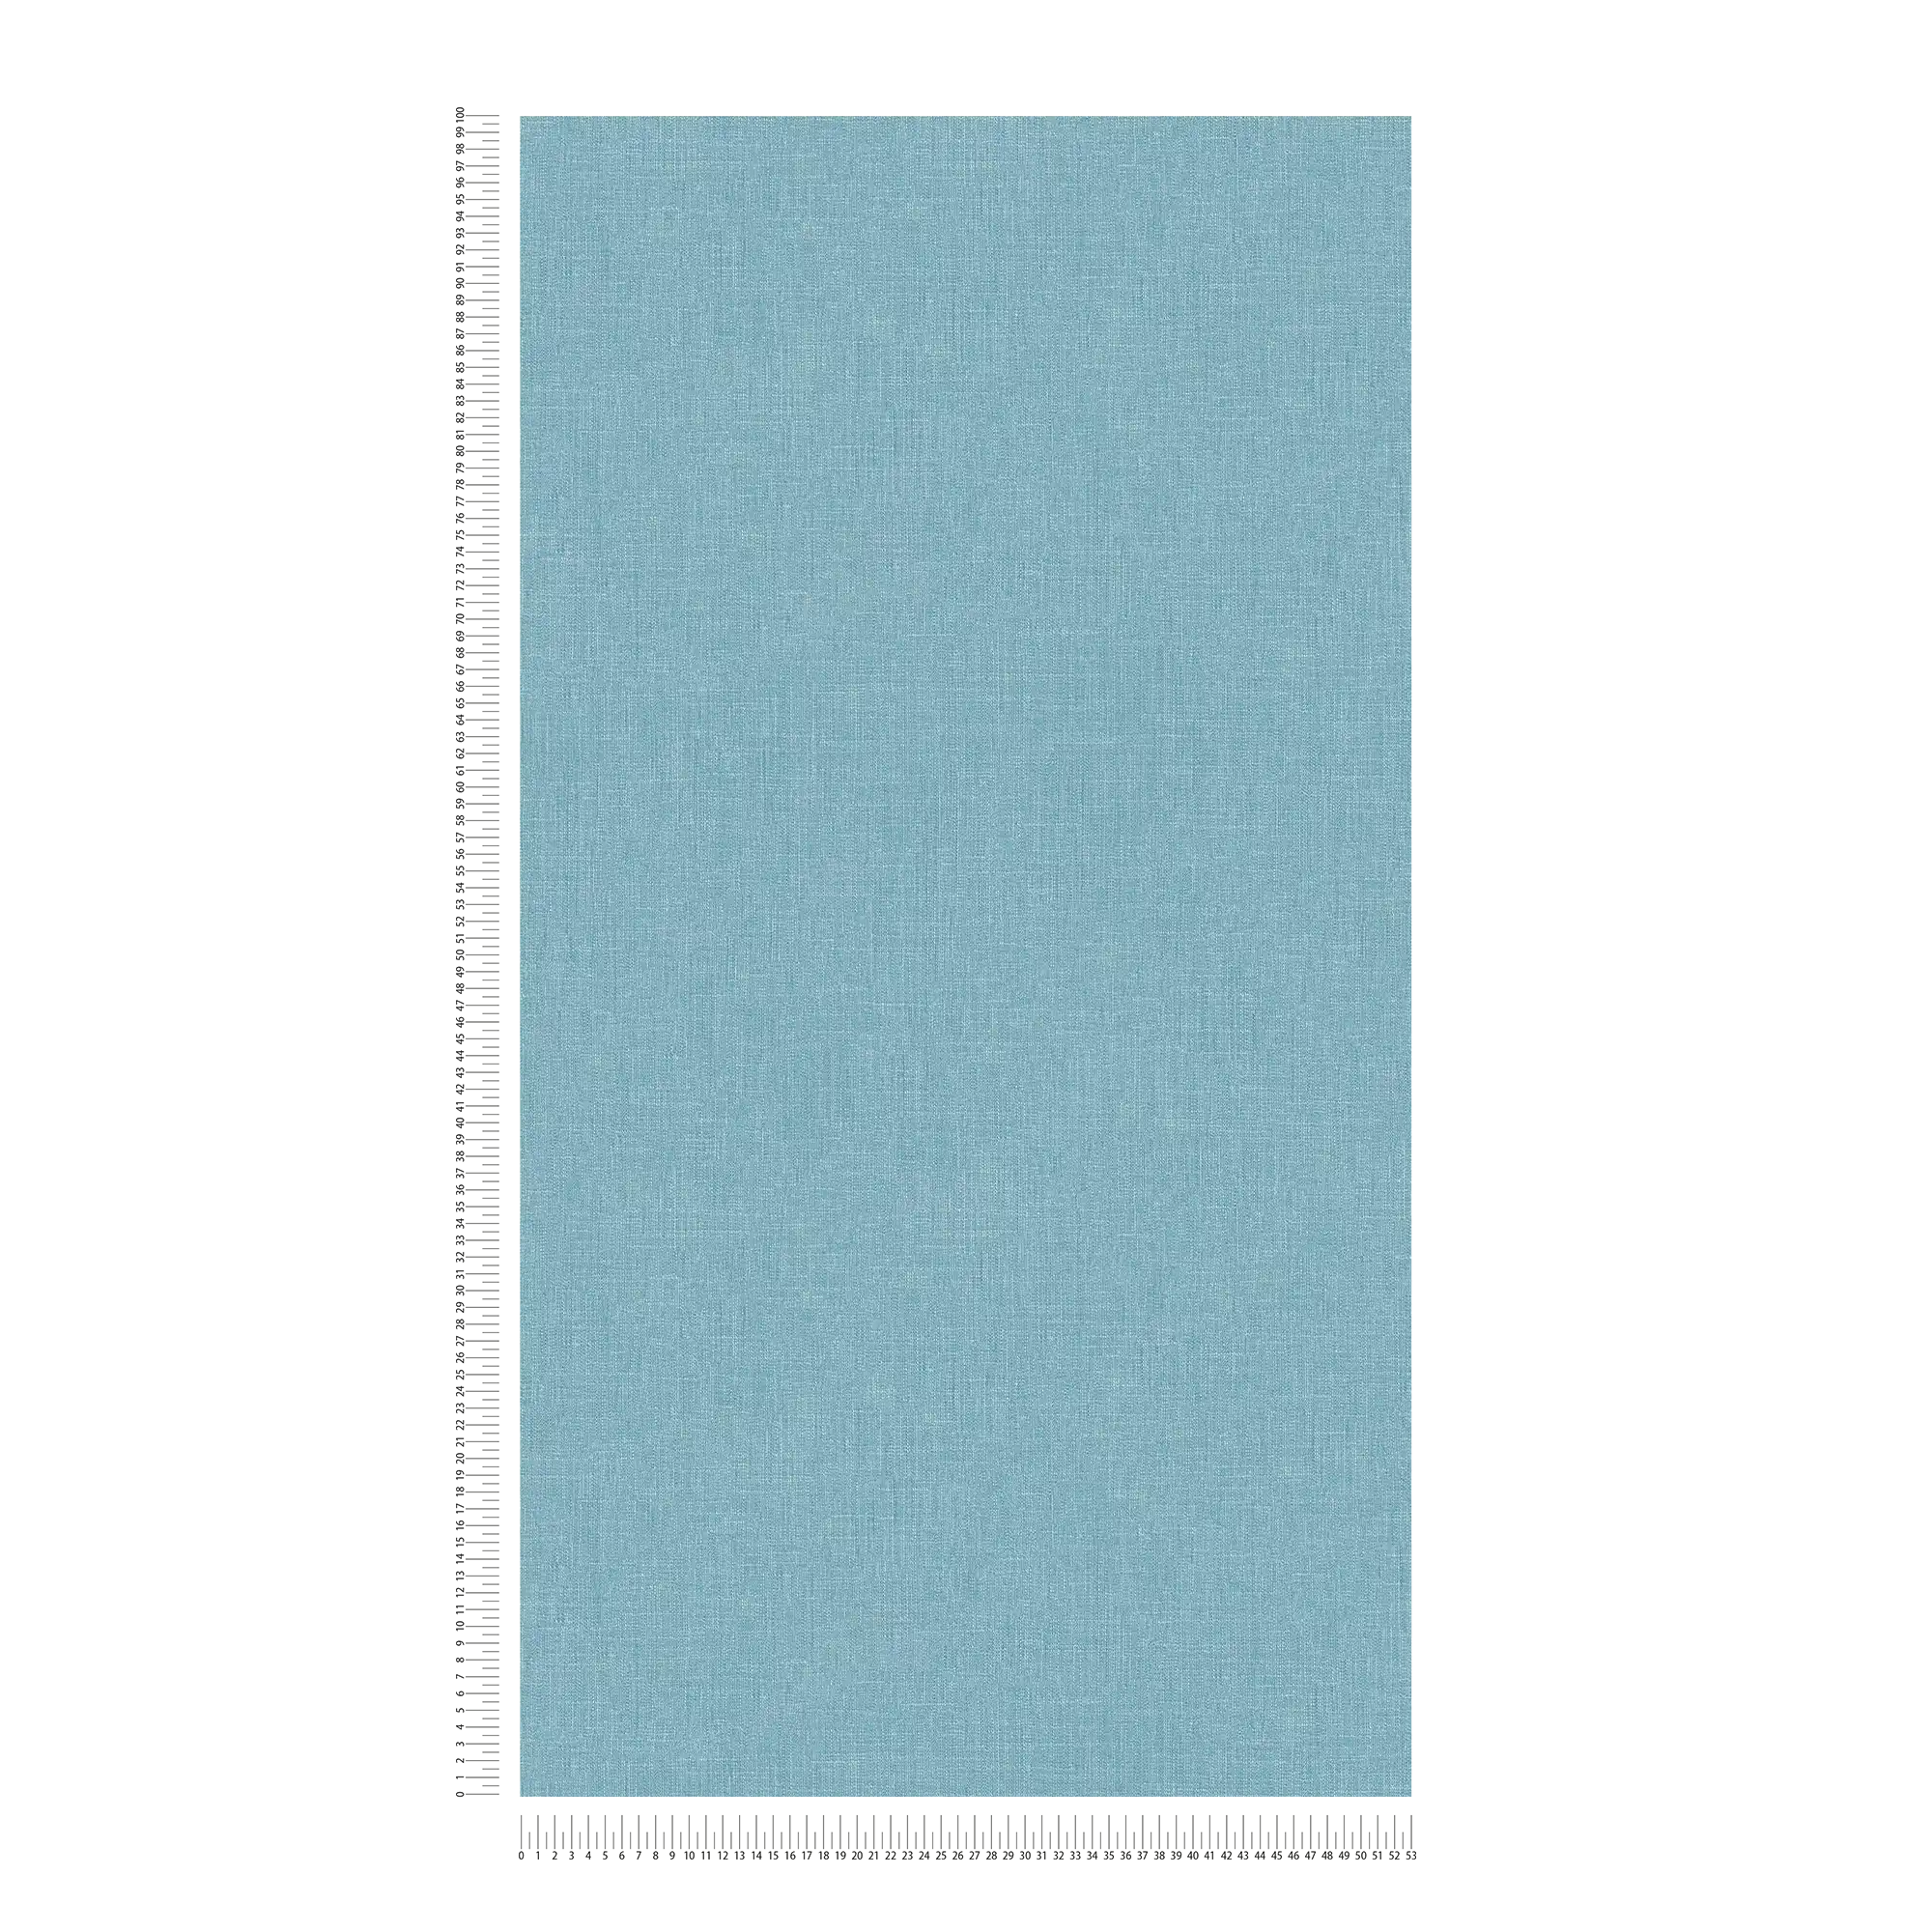             Vliesbehang blauw gevlekt met textielstructuur in boucléstijl
        